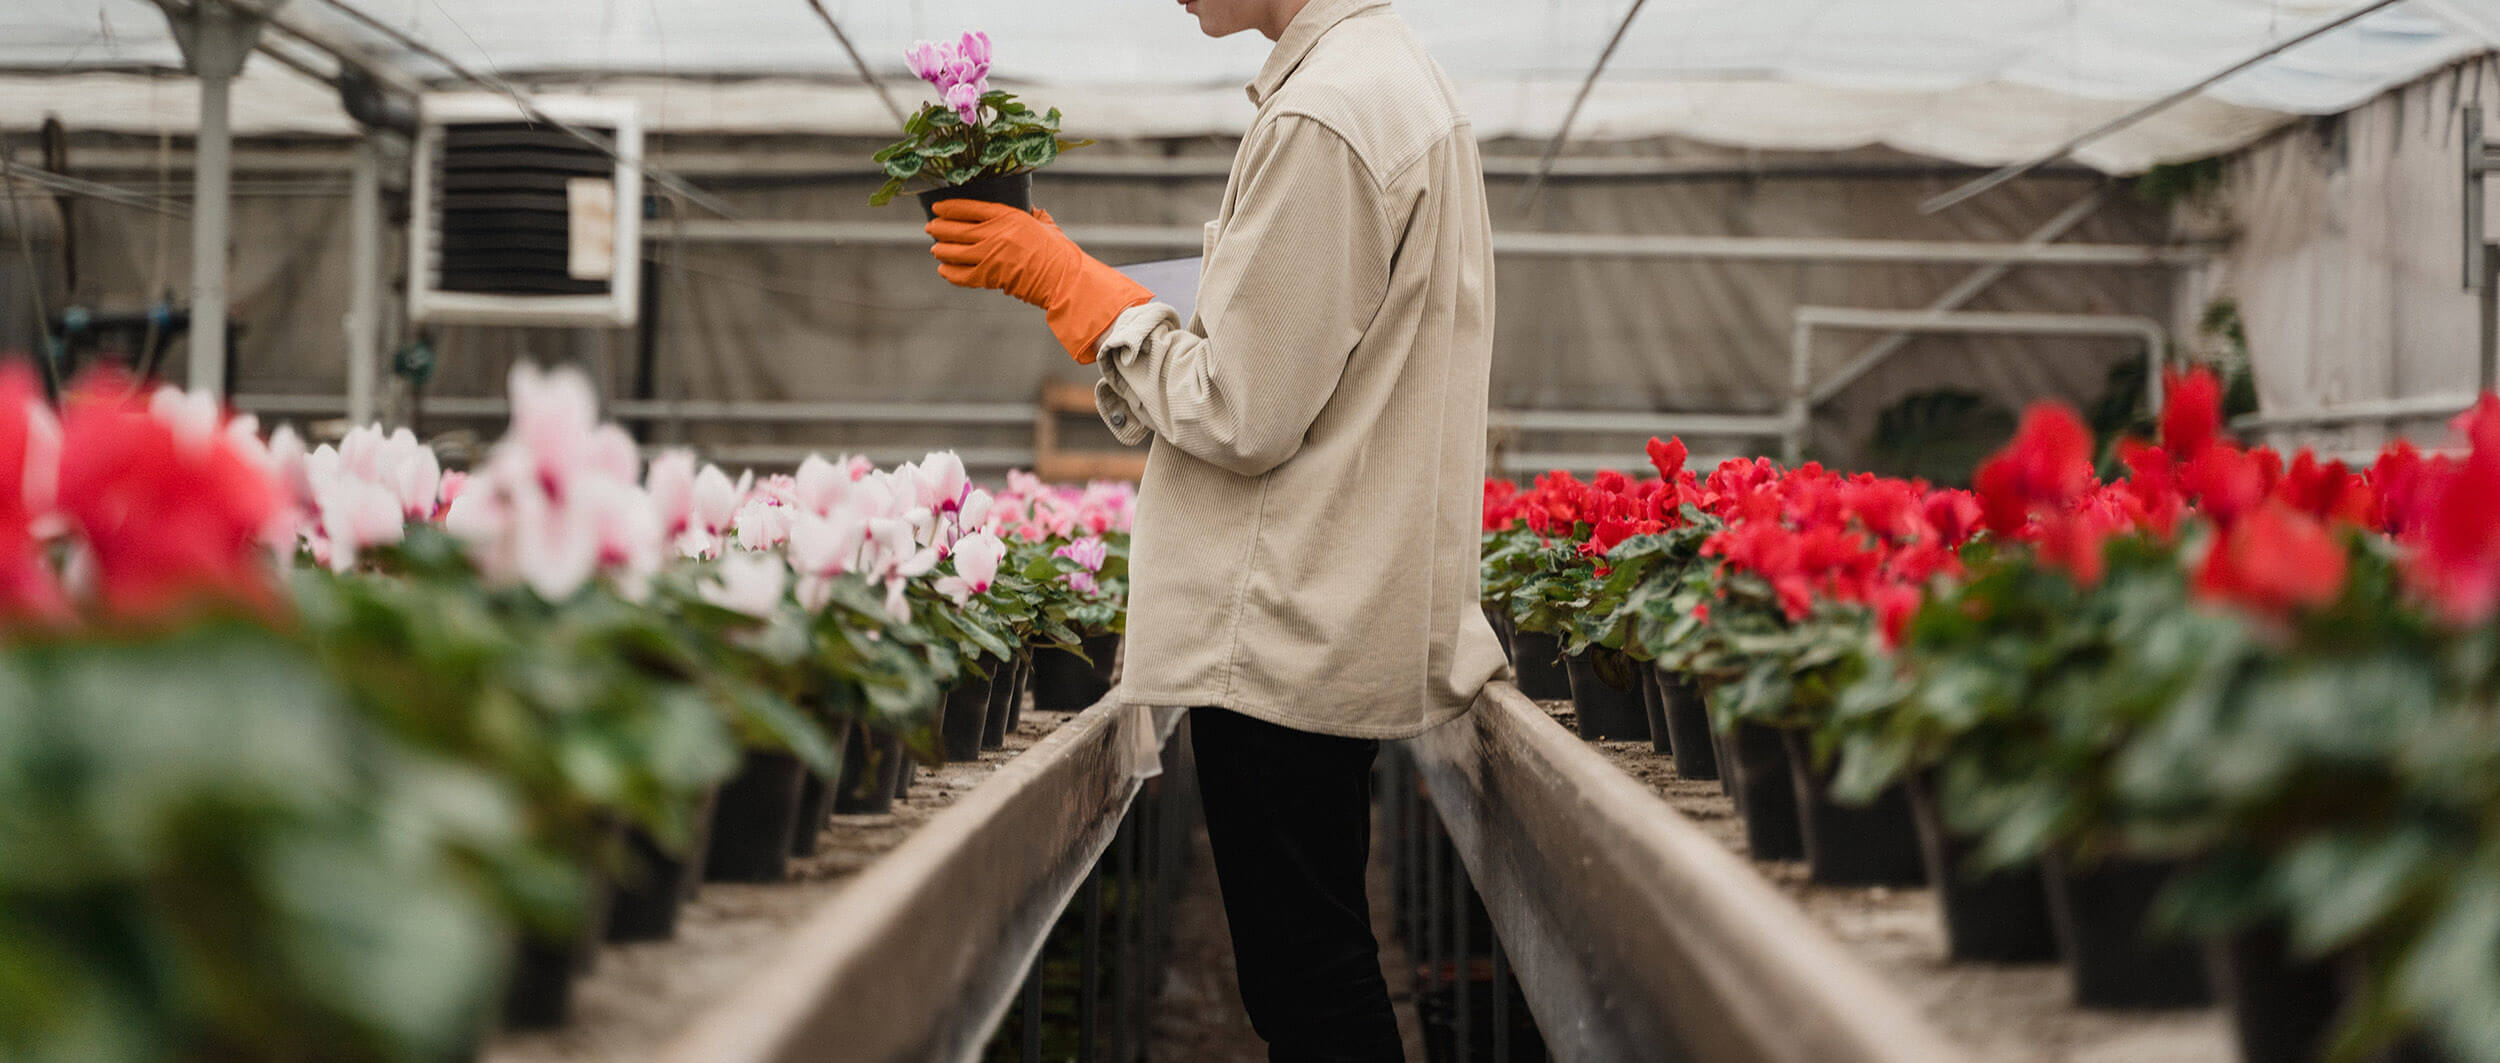 L'horticulteur, un professionnel qui aime travailler dans la nature et être au contact des plantes